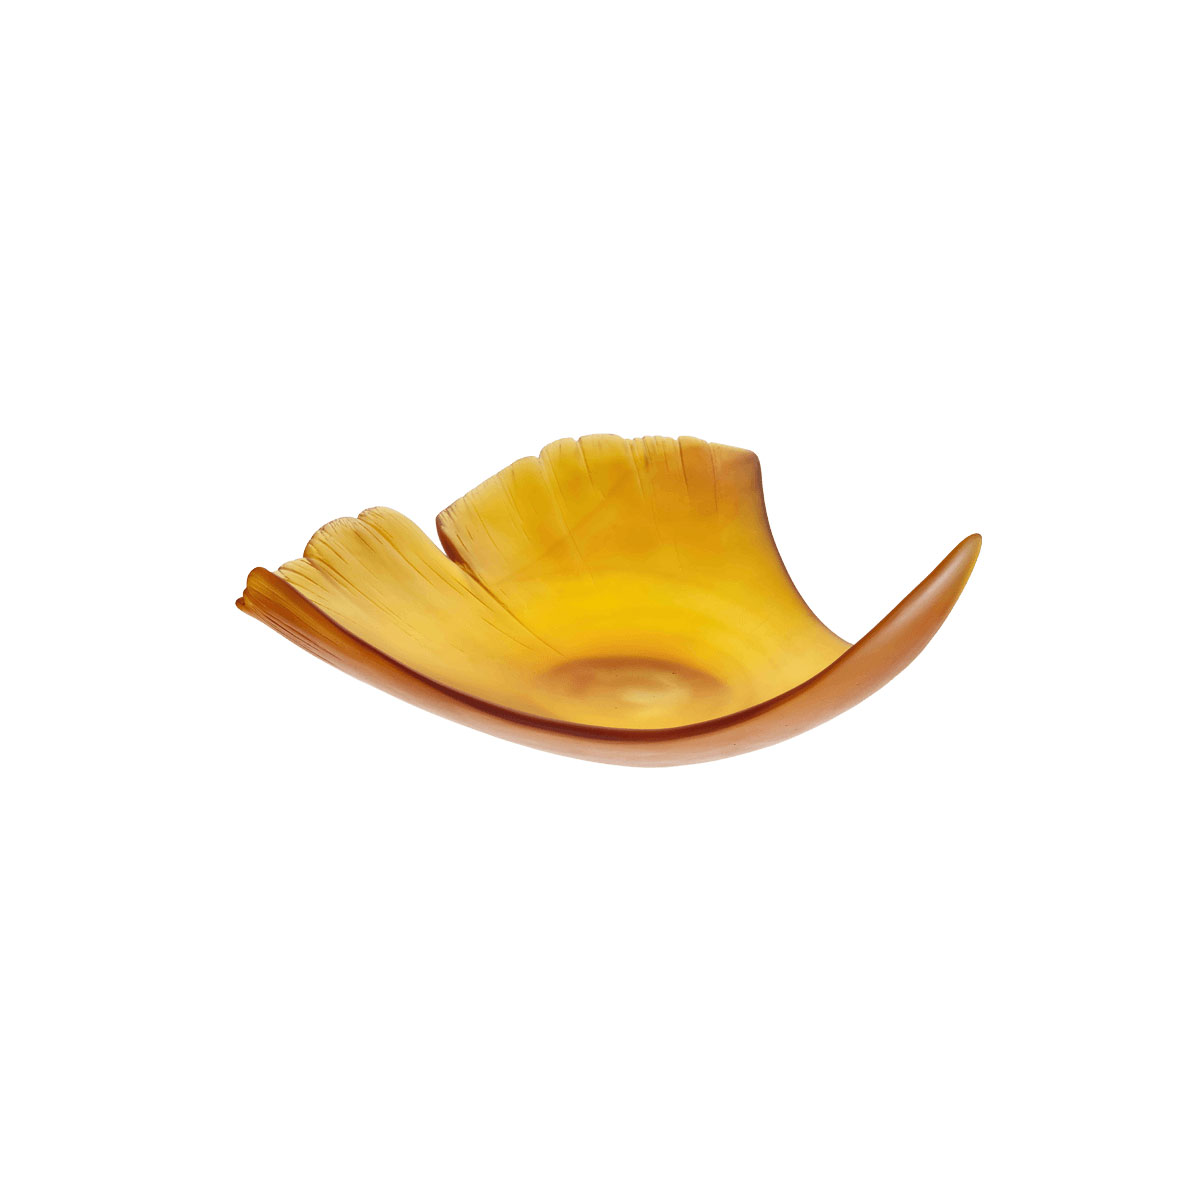 Daum Large Ginkgo Leaf Bowl in Amber